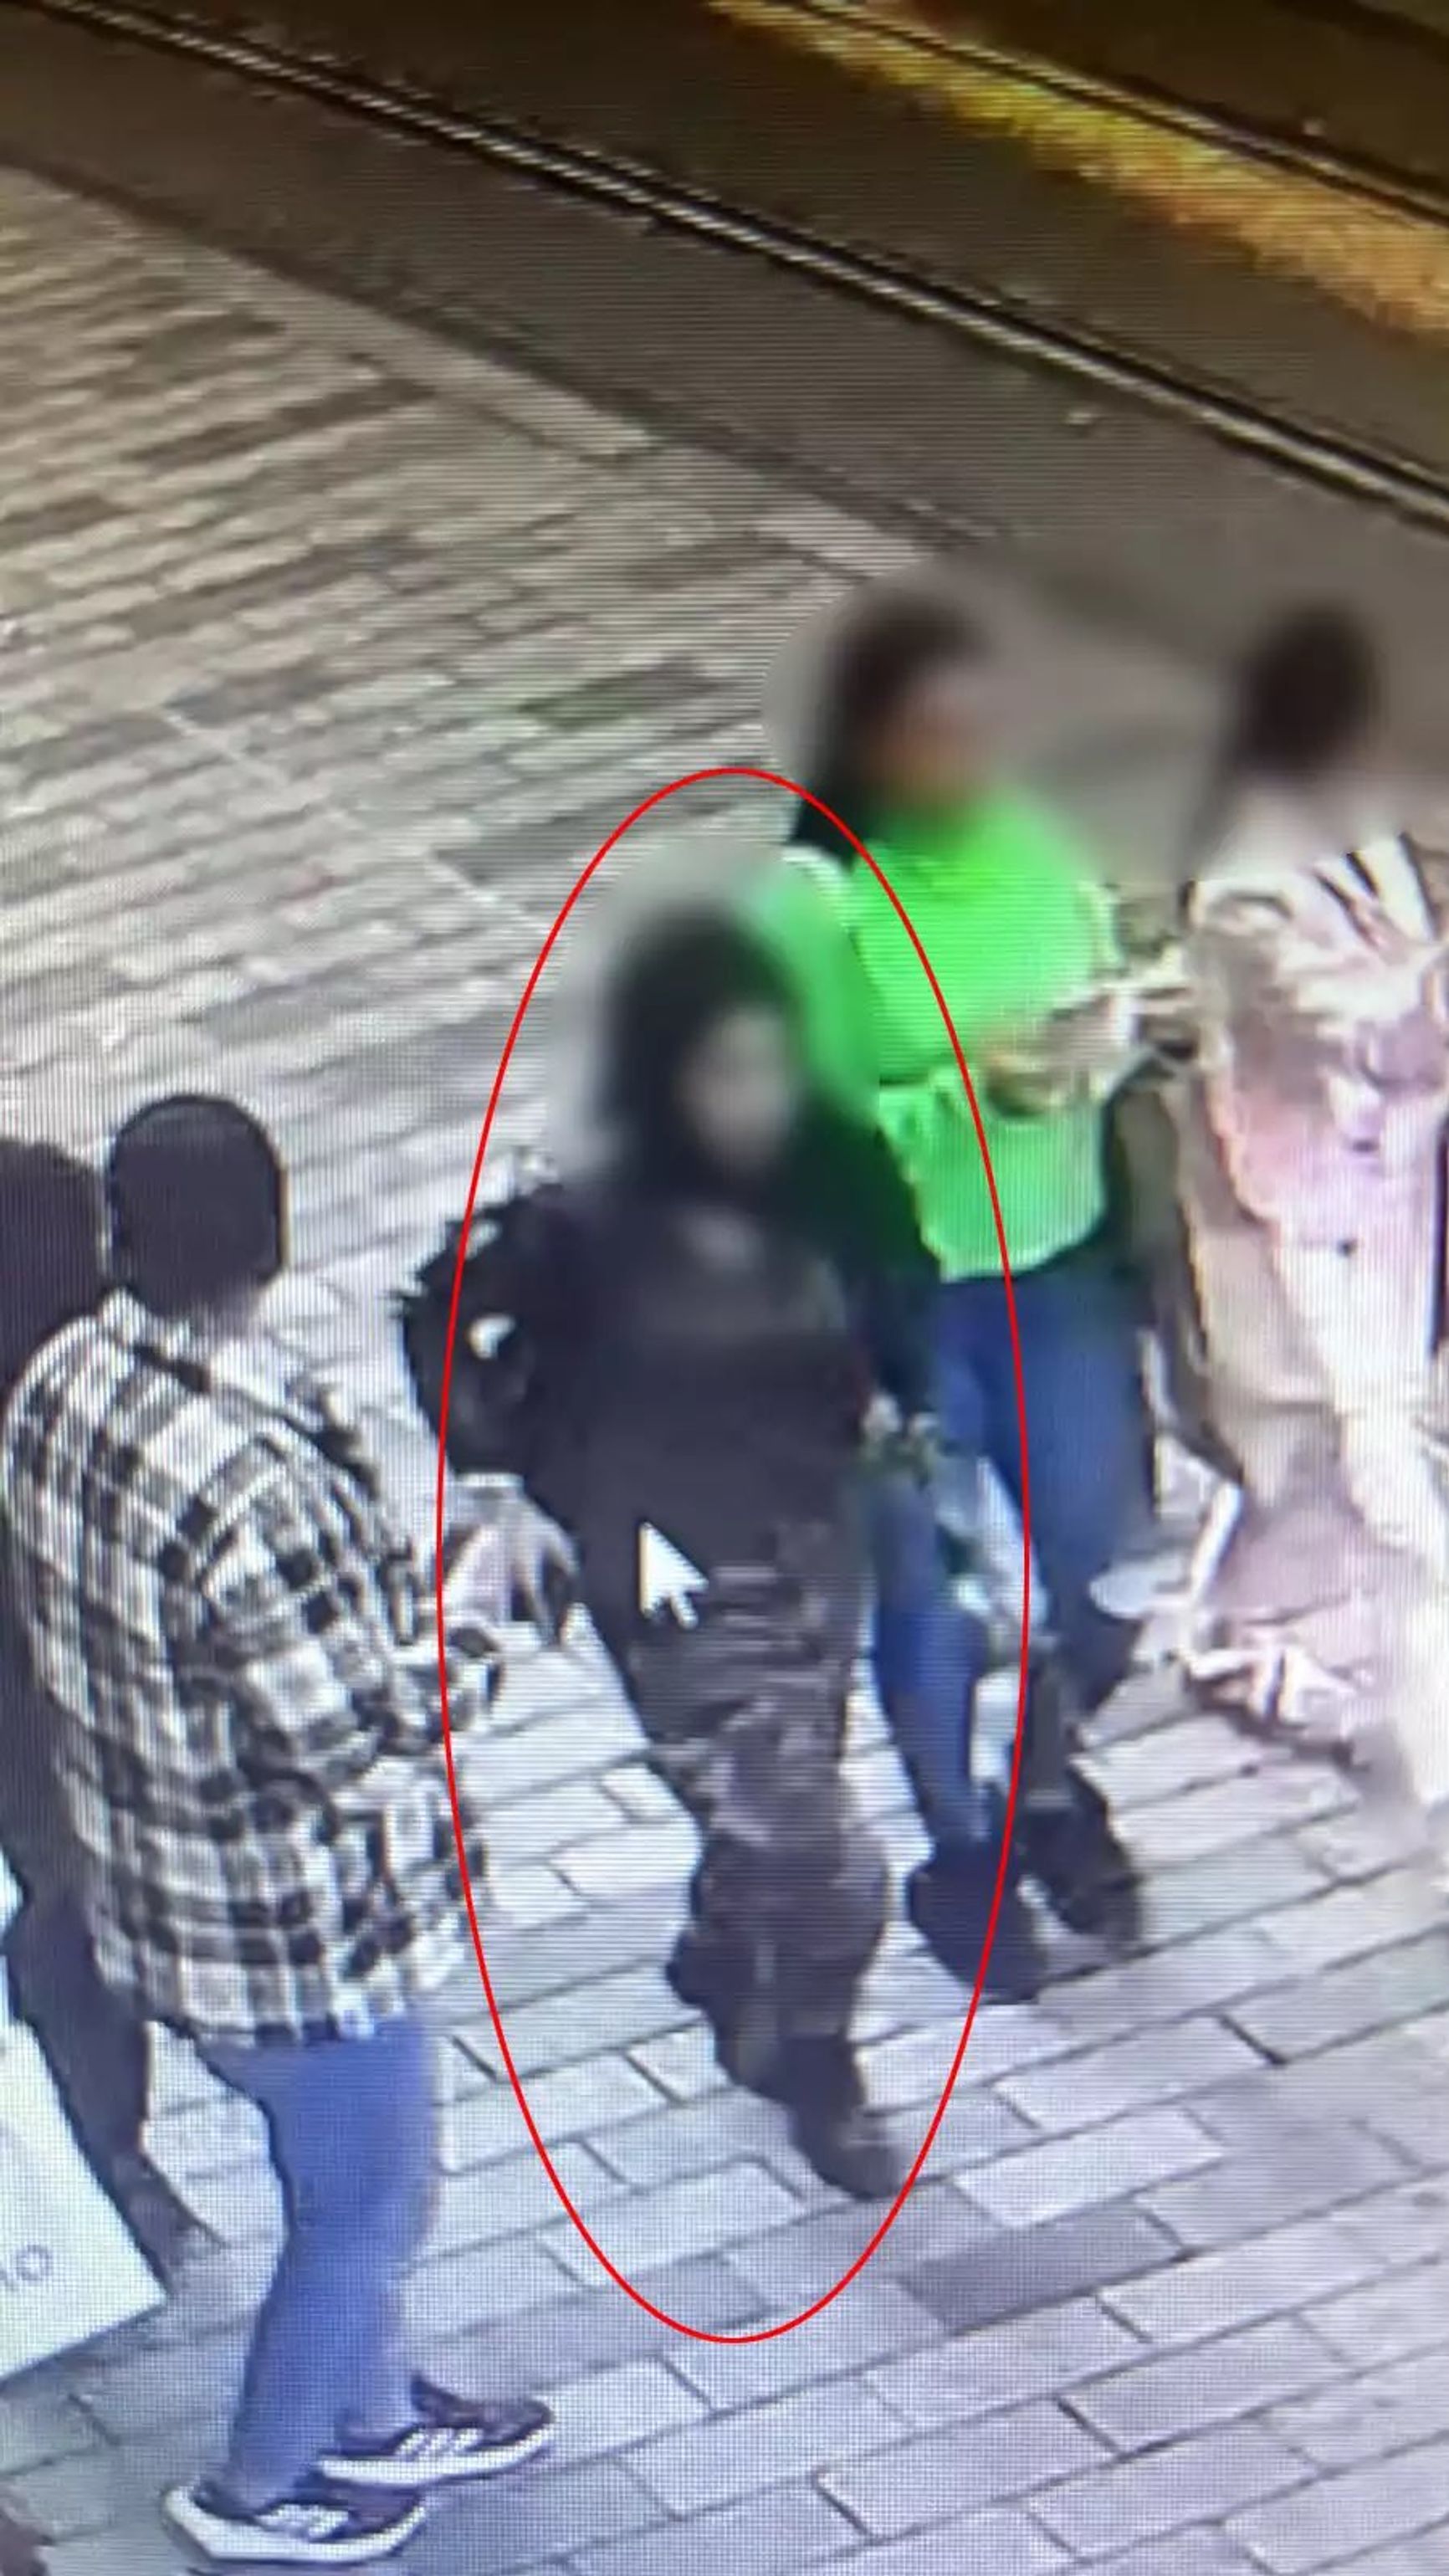 Во взрыве в Стамбуле подозревается женщина, ее разыскивают, сообщили власти Турции